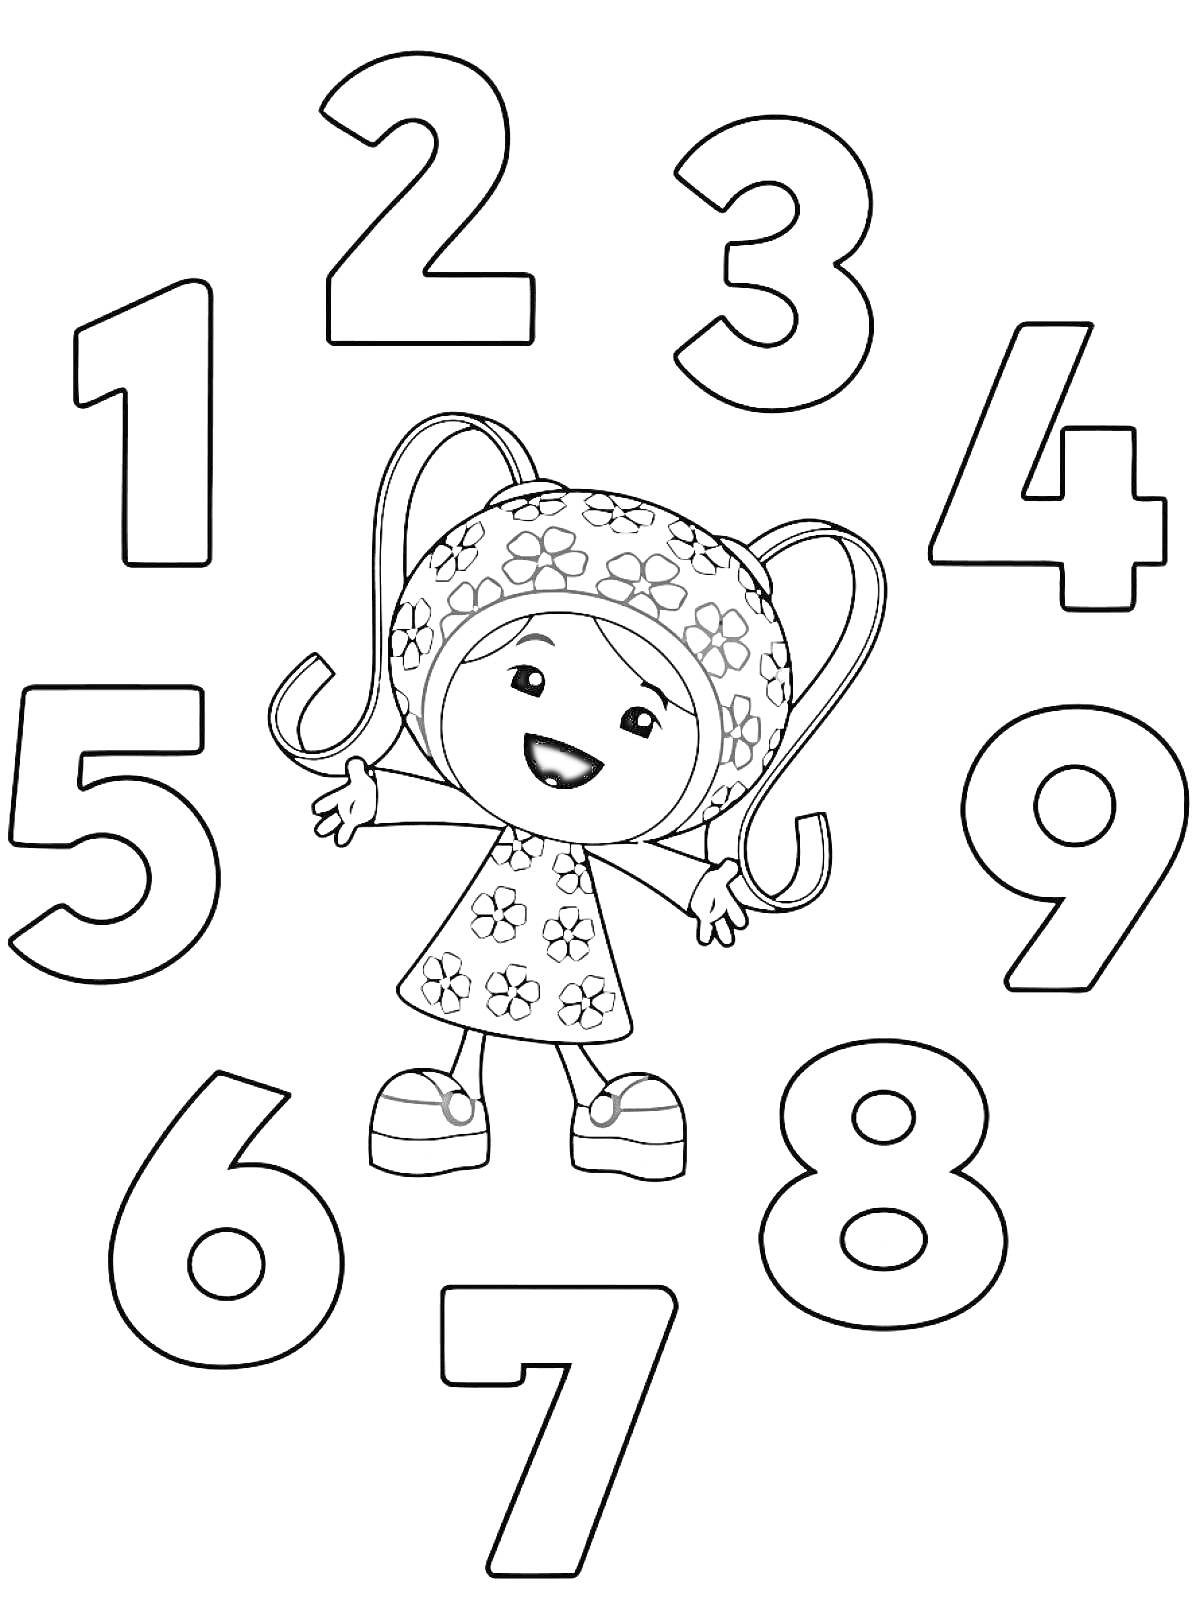 На раскраске изображено: Умизуми, Девочка, Робот, Цветы, Платье, Косички, Ботинки, Цифра 8, Цифра 2, Цифра 5, Цифра 7, Цифра 6, Цифра 1, Цифра 3, Цифра 9, Цифра 4, Цифры